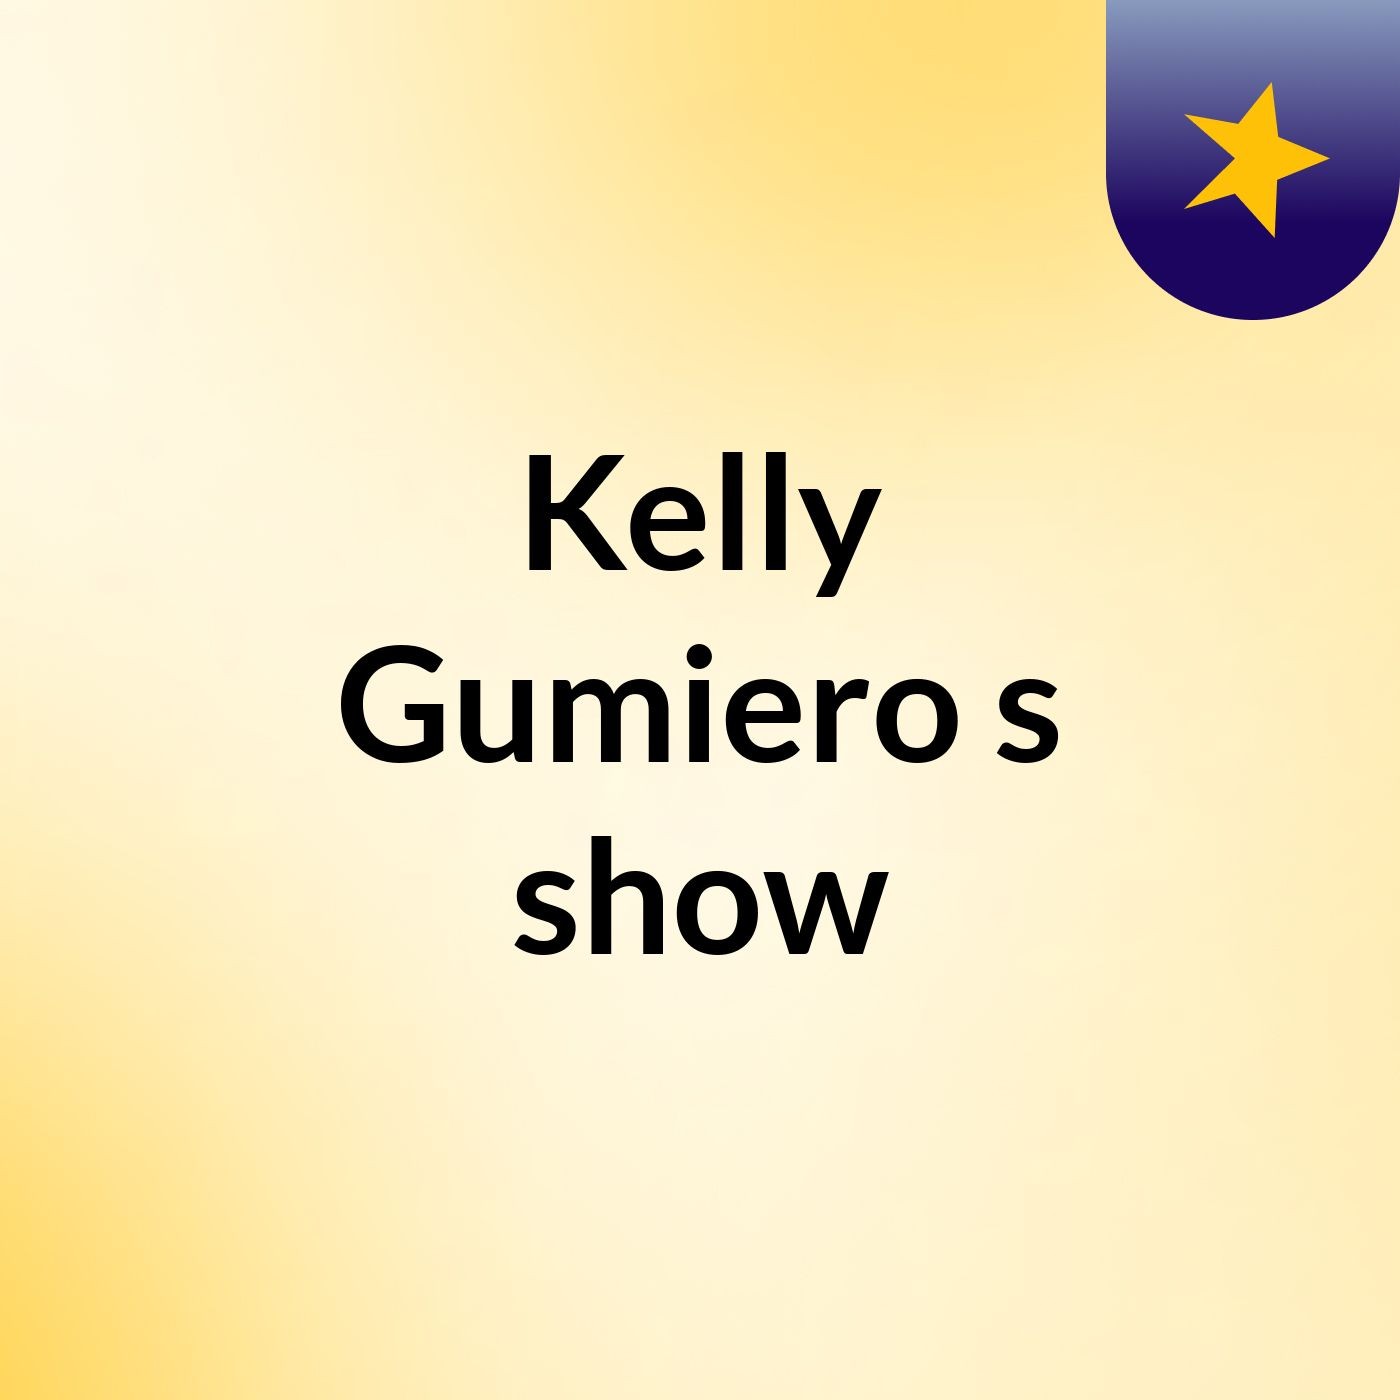 Kelly Gumiero's show